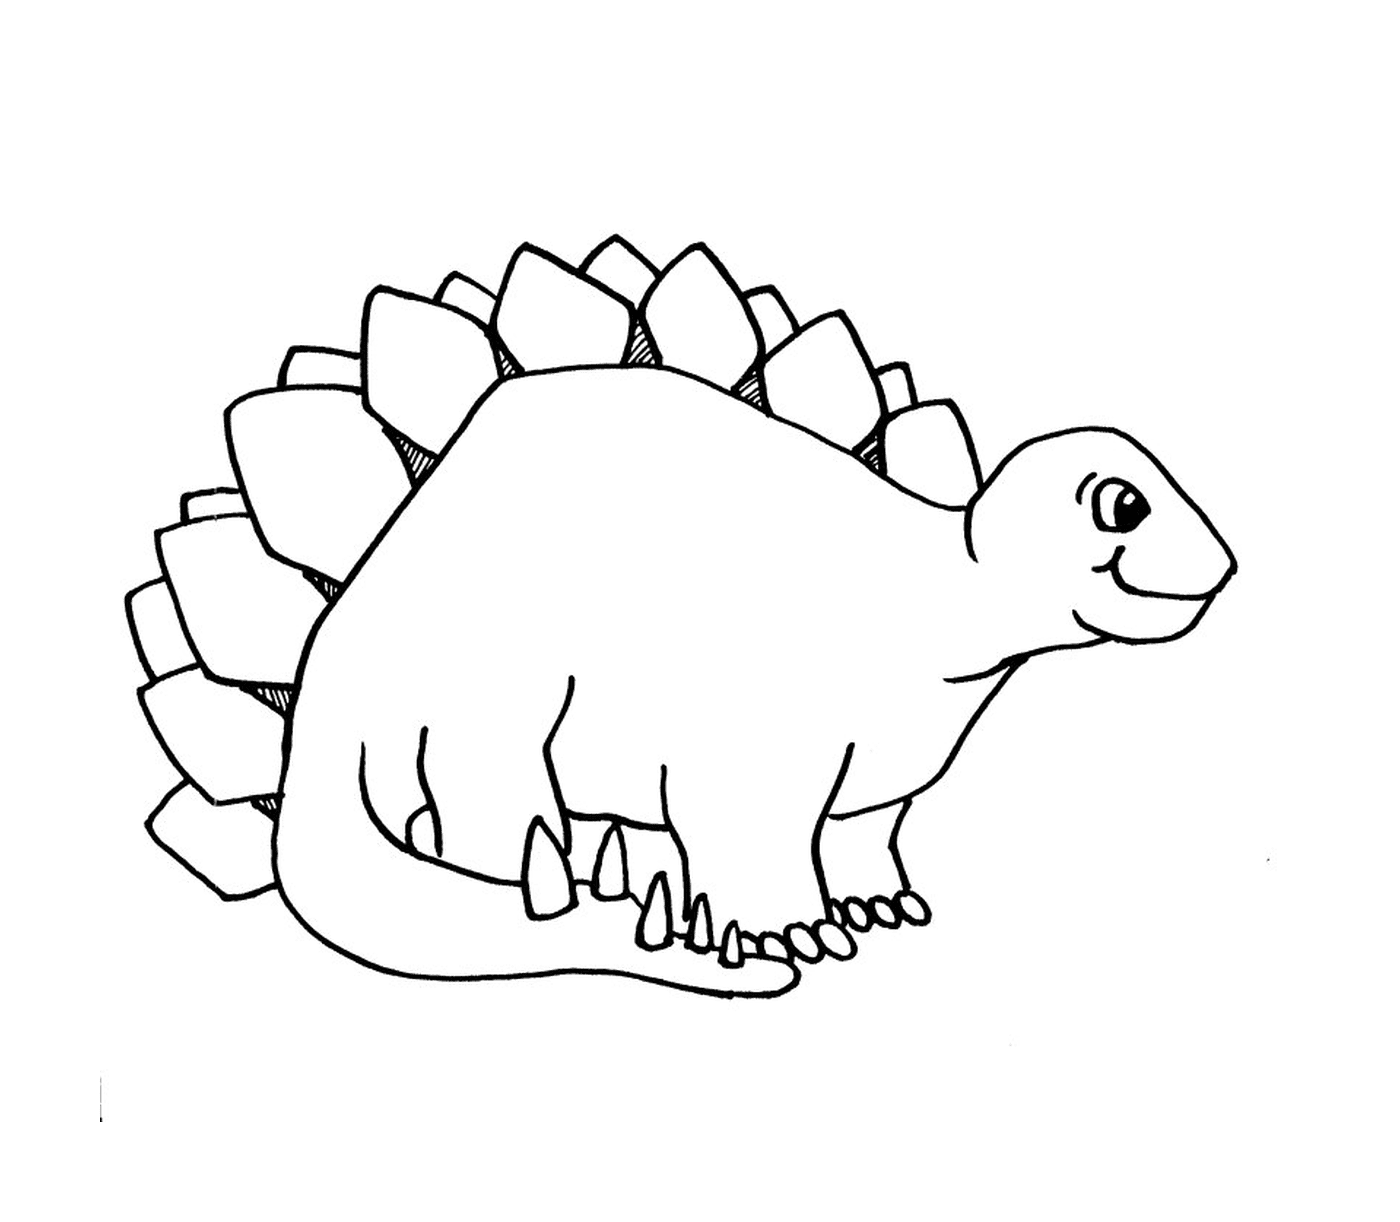  Uno stegosauro 